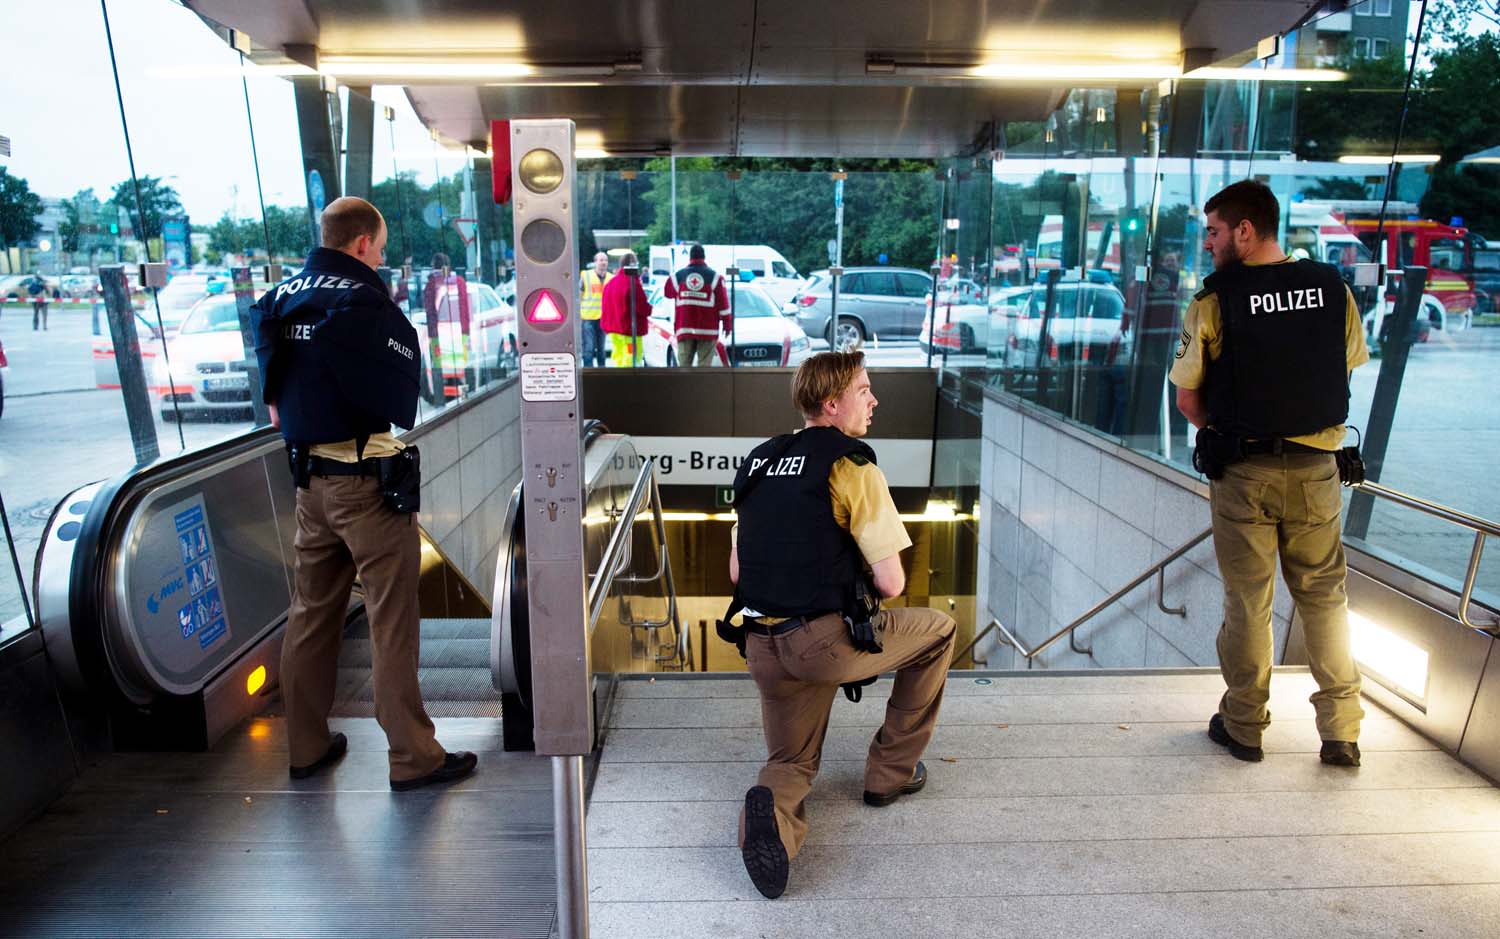 Sube a 10 muertos el balance de víctimas en el tiroteo en Múnich  (Fotos)